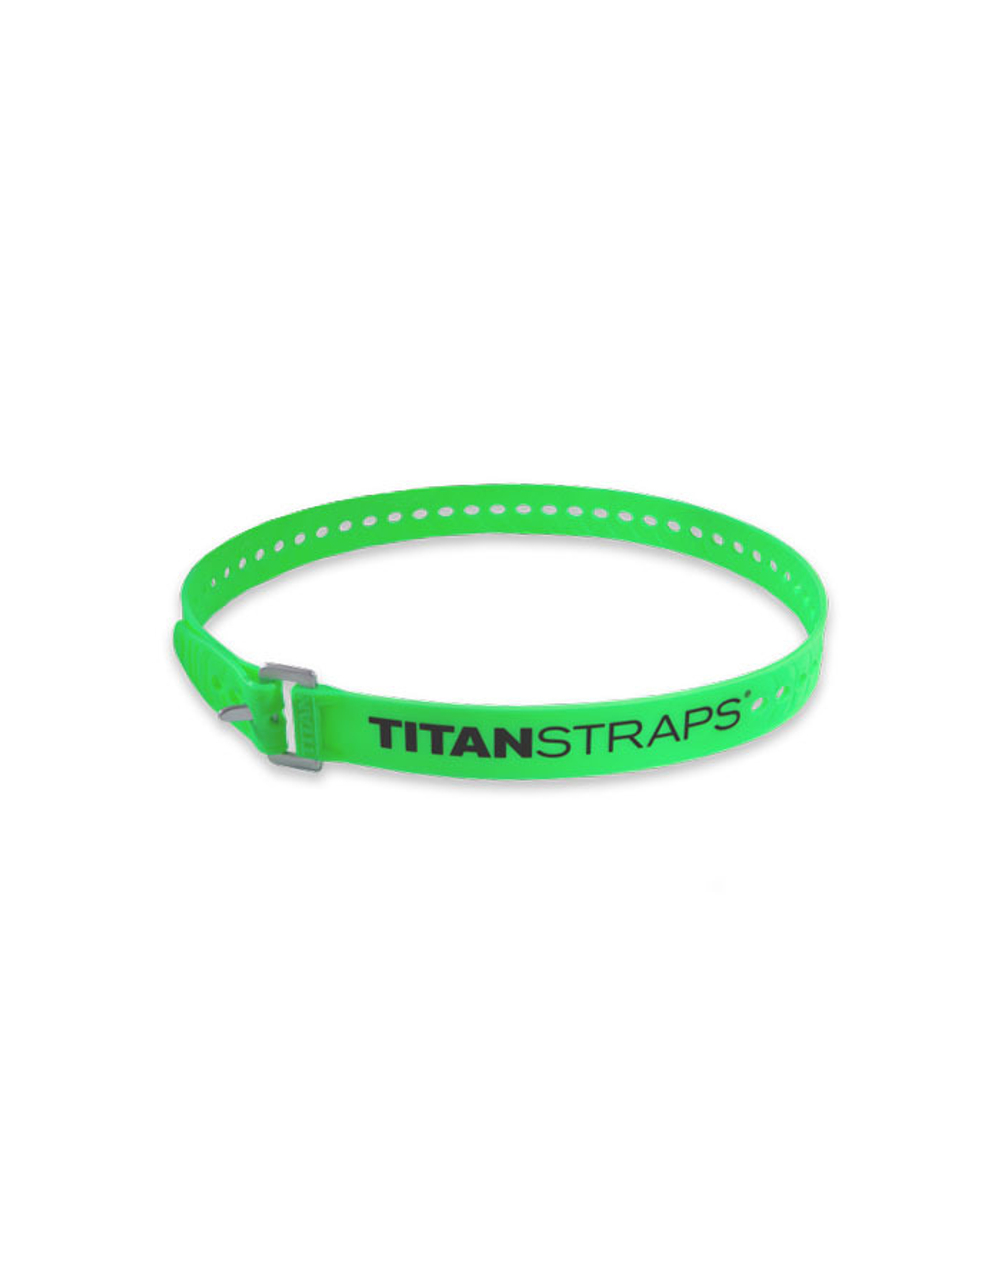 Ремень крепёжный TitanStraps Industrial зеленый L = 91 см (Dmax = 27 см, Dmin = 5,5 см)